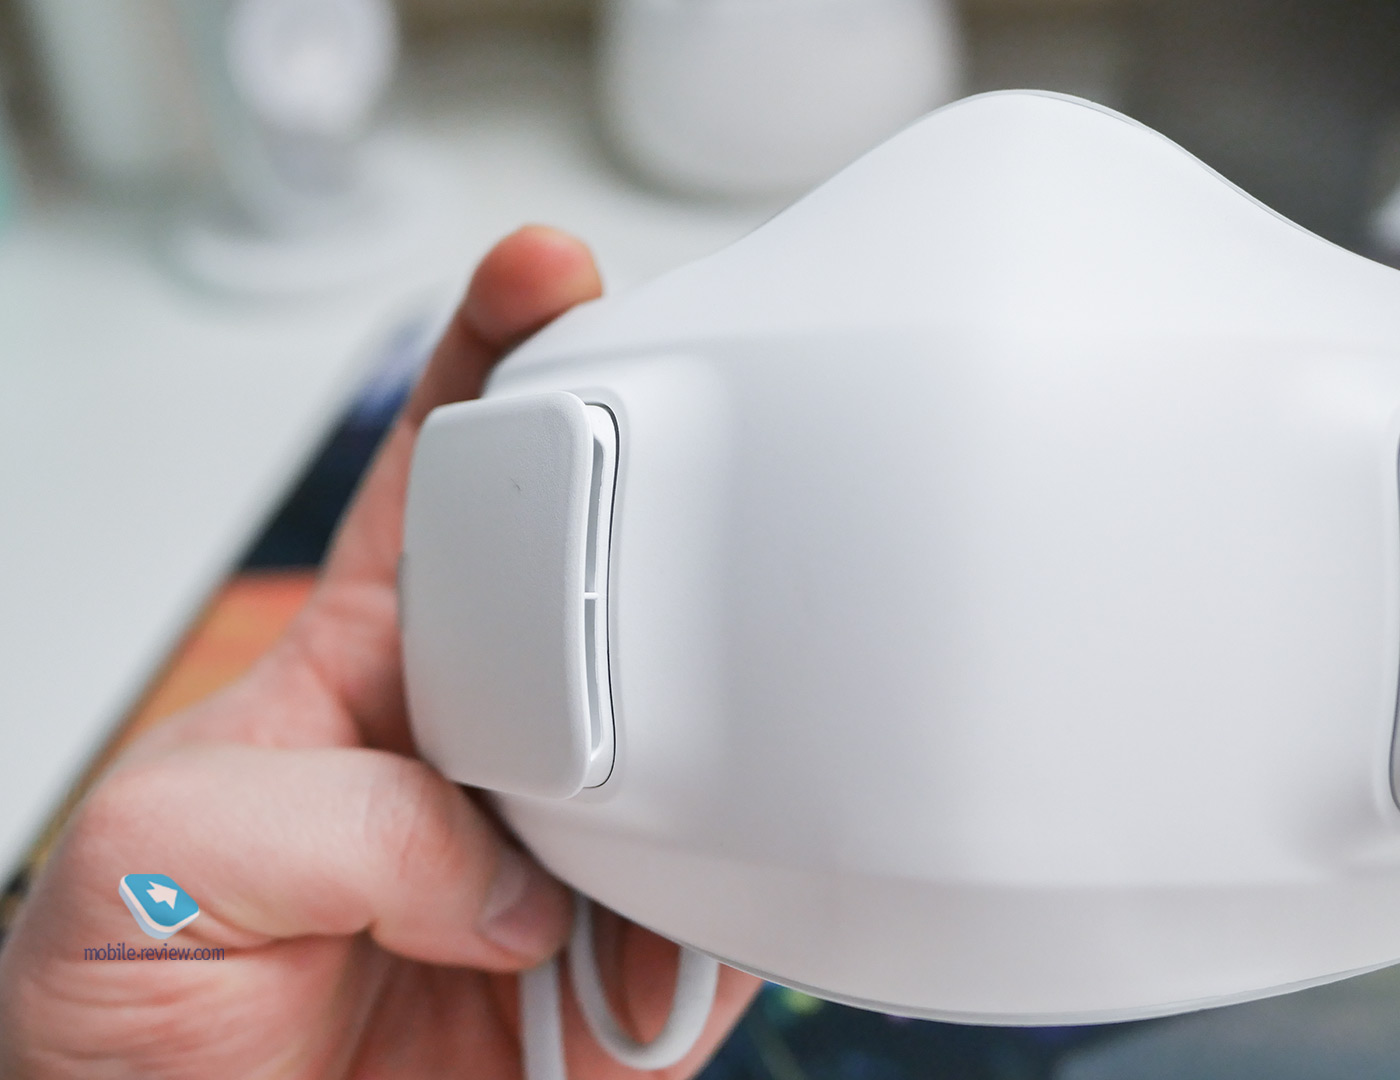 Обзор маски LG PuriCare Wearable Air Purifier – дорогая игрушка или важное современное устройство?